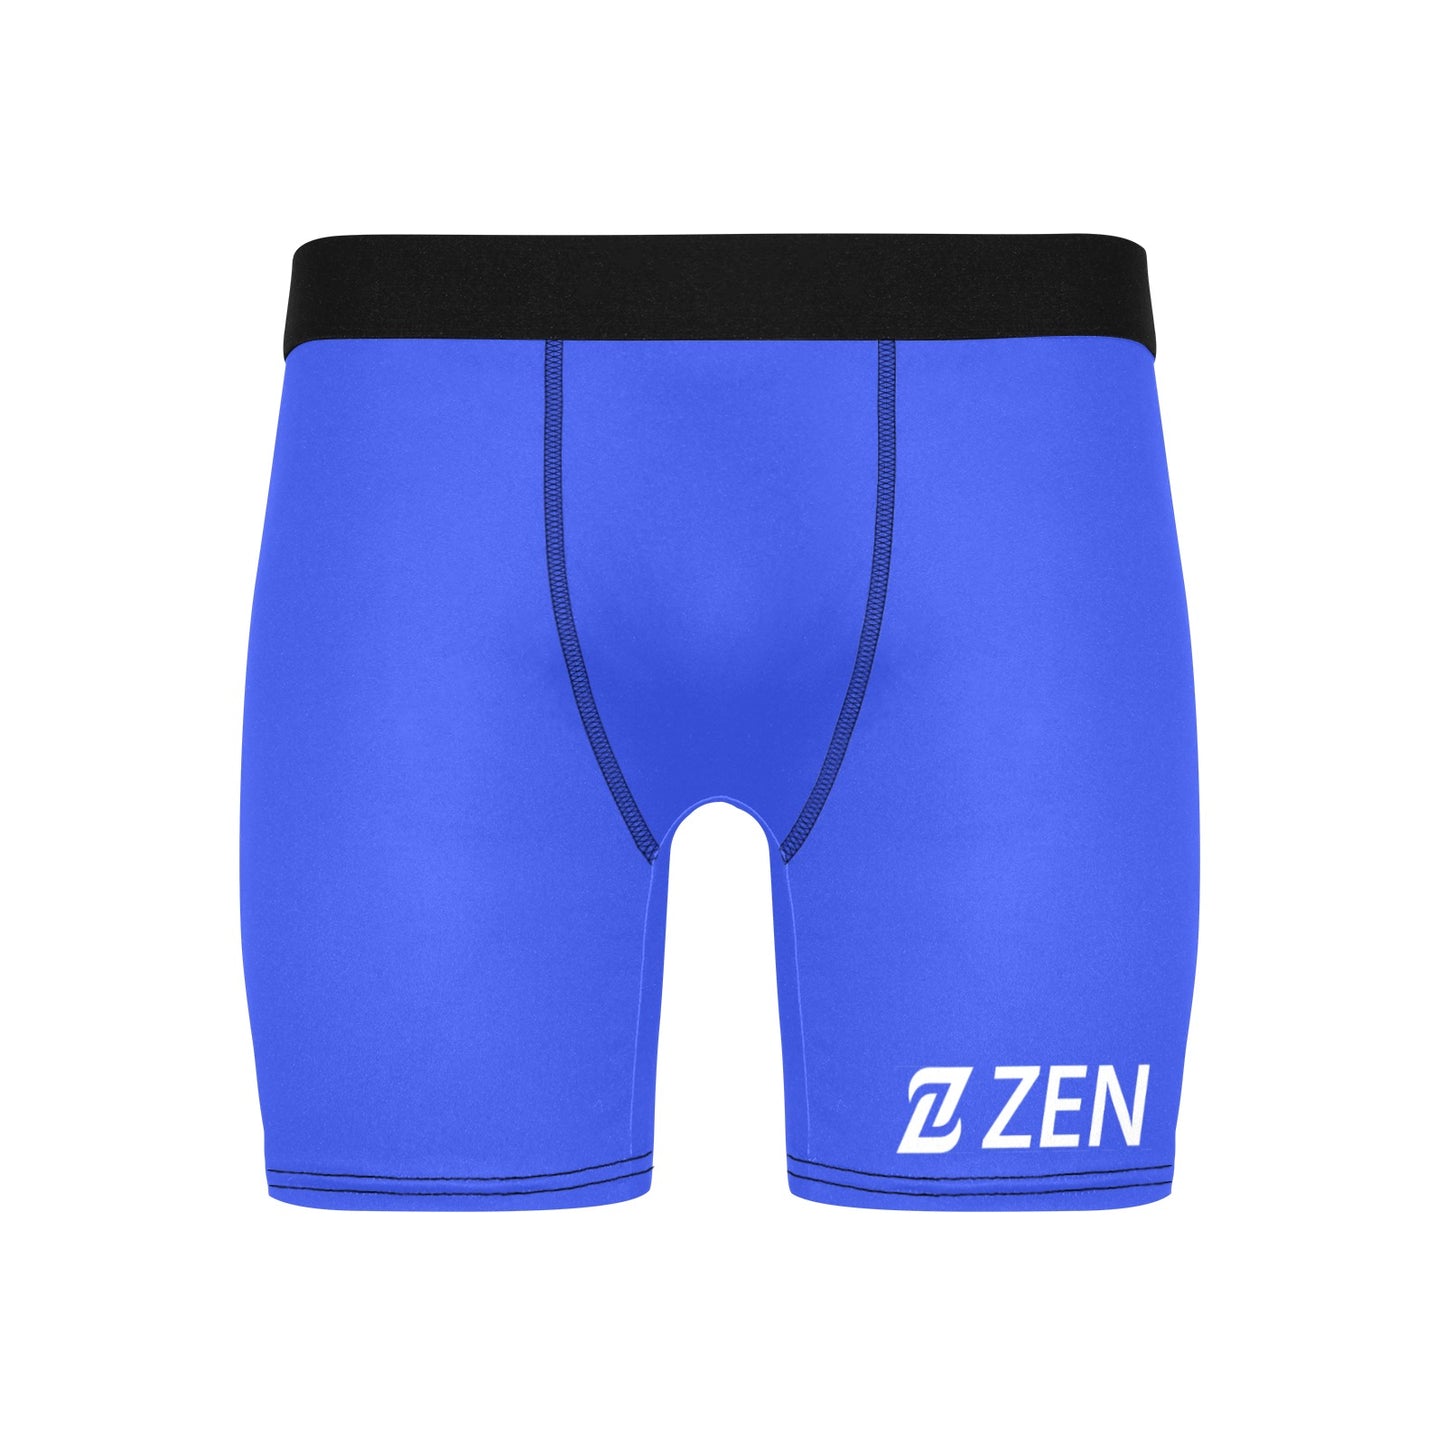 Zen Boxers Long -Blue